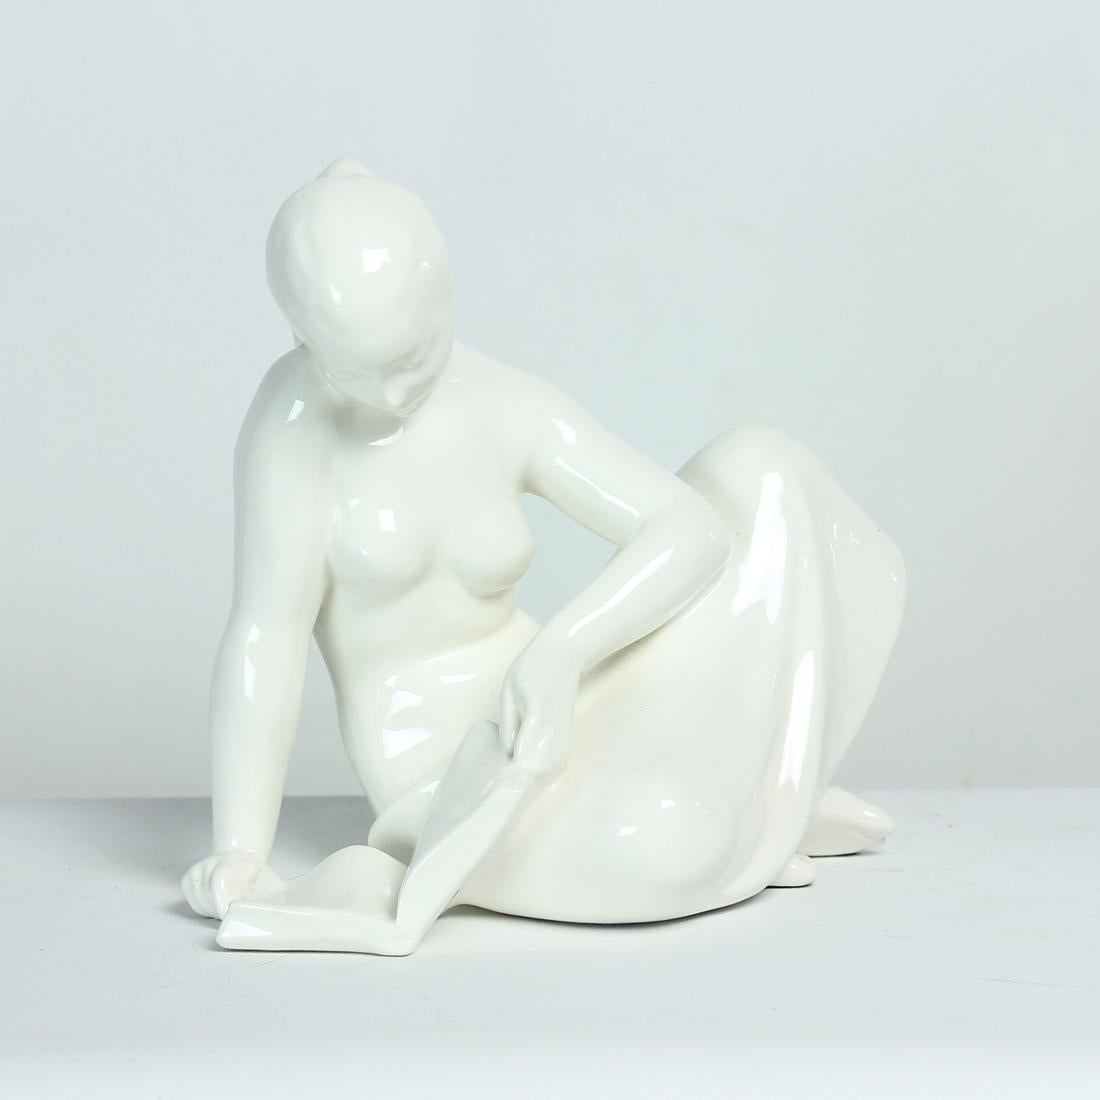 Belle statue vintage en porcelaine produite par la société Jihokera dans les années 1960. Tampon d'origine partiellement visible sur le fond. La statue est en porcelaine blanche émaillée. Elle montre une femme lisant un livre. La statue a l'air